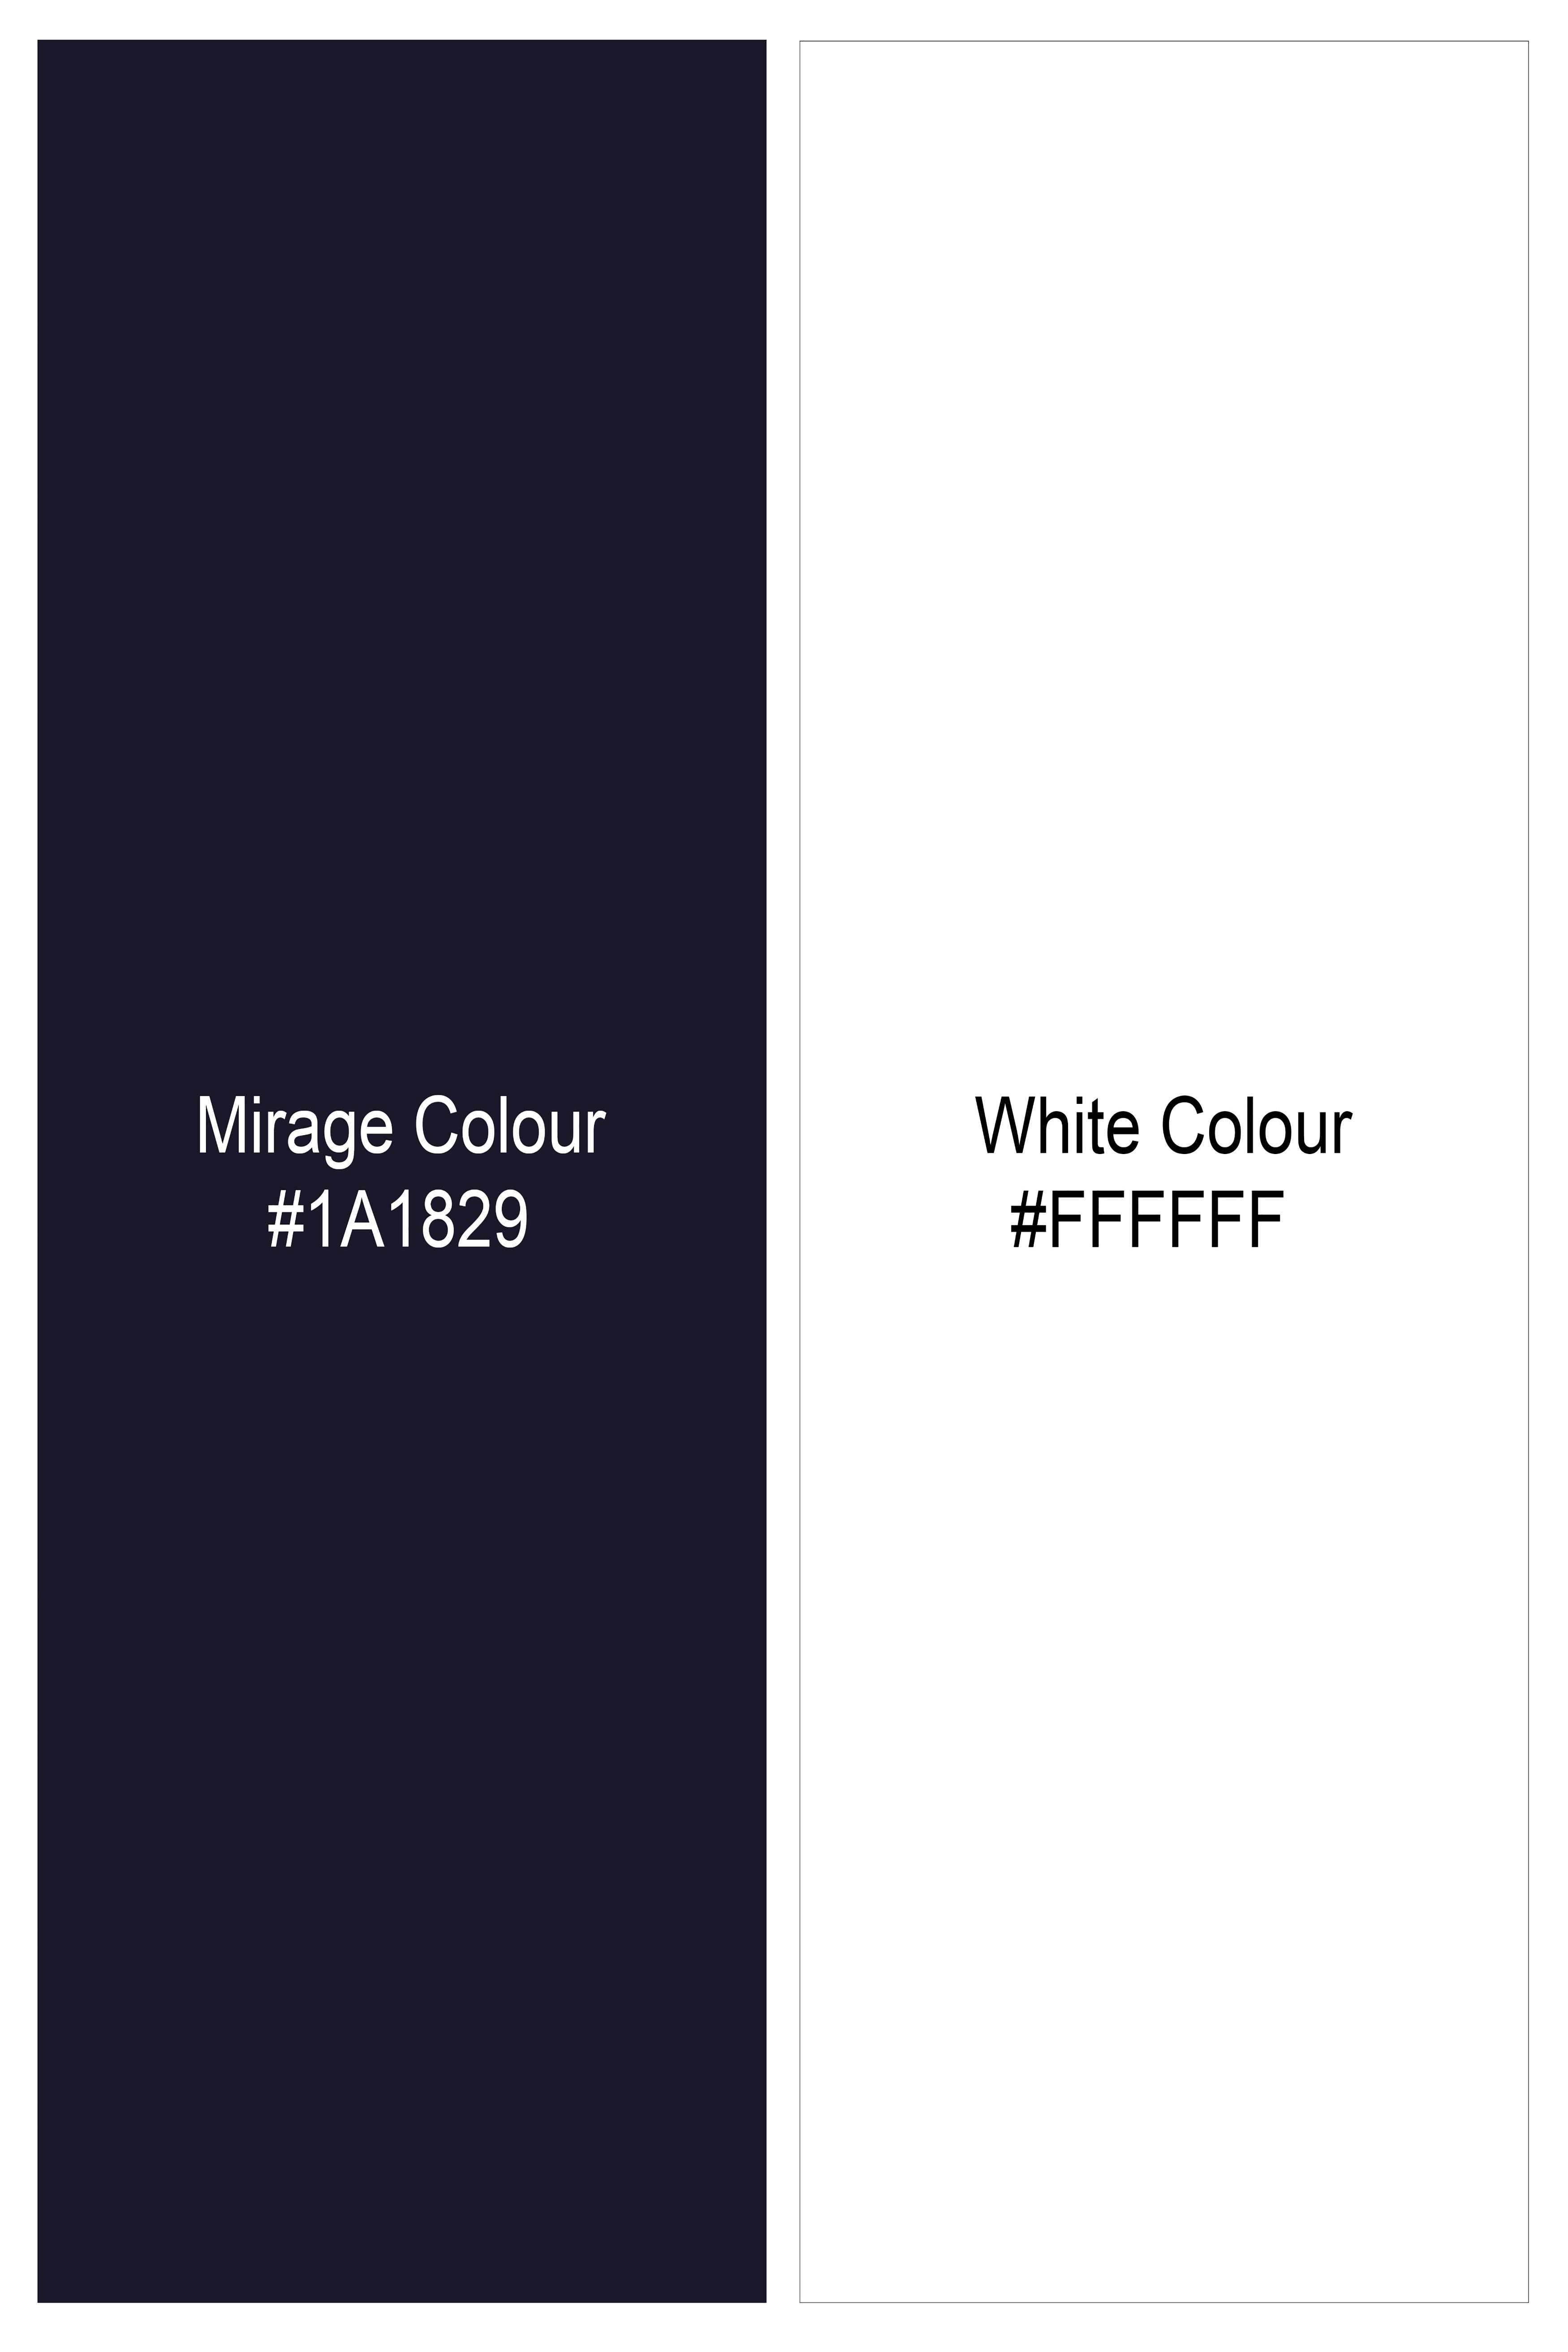 Mirage Navy Blue Printed Lightweight Premium Cotton Oversized Shirt 10060-CC-BLE-OSS-SS-38,10060-CC-BLE-OSS-SS-39,10060-CC-BLE-OSS-SS-40,10060-CC-BLE-OSS-SS-42,10060-CC-BLE-OSS-SS-44,10060-CC-BLE-OSS-SS-46,10060-CC-BLE-OSS-SS-48,10060-CC-BLE-OSS-SS-50,10060-CC-BLE-OSS-SS-52